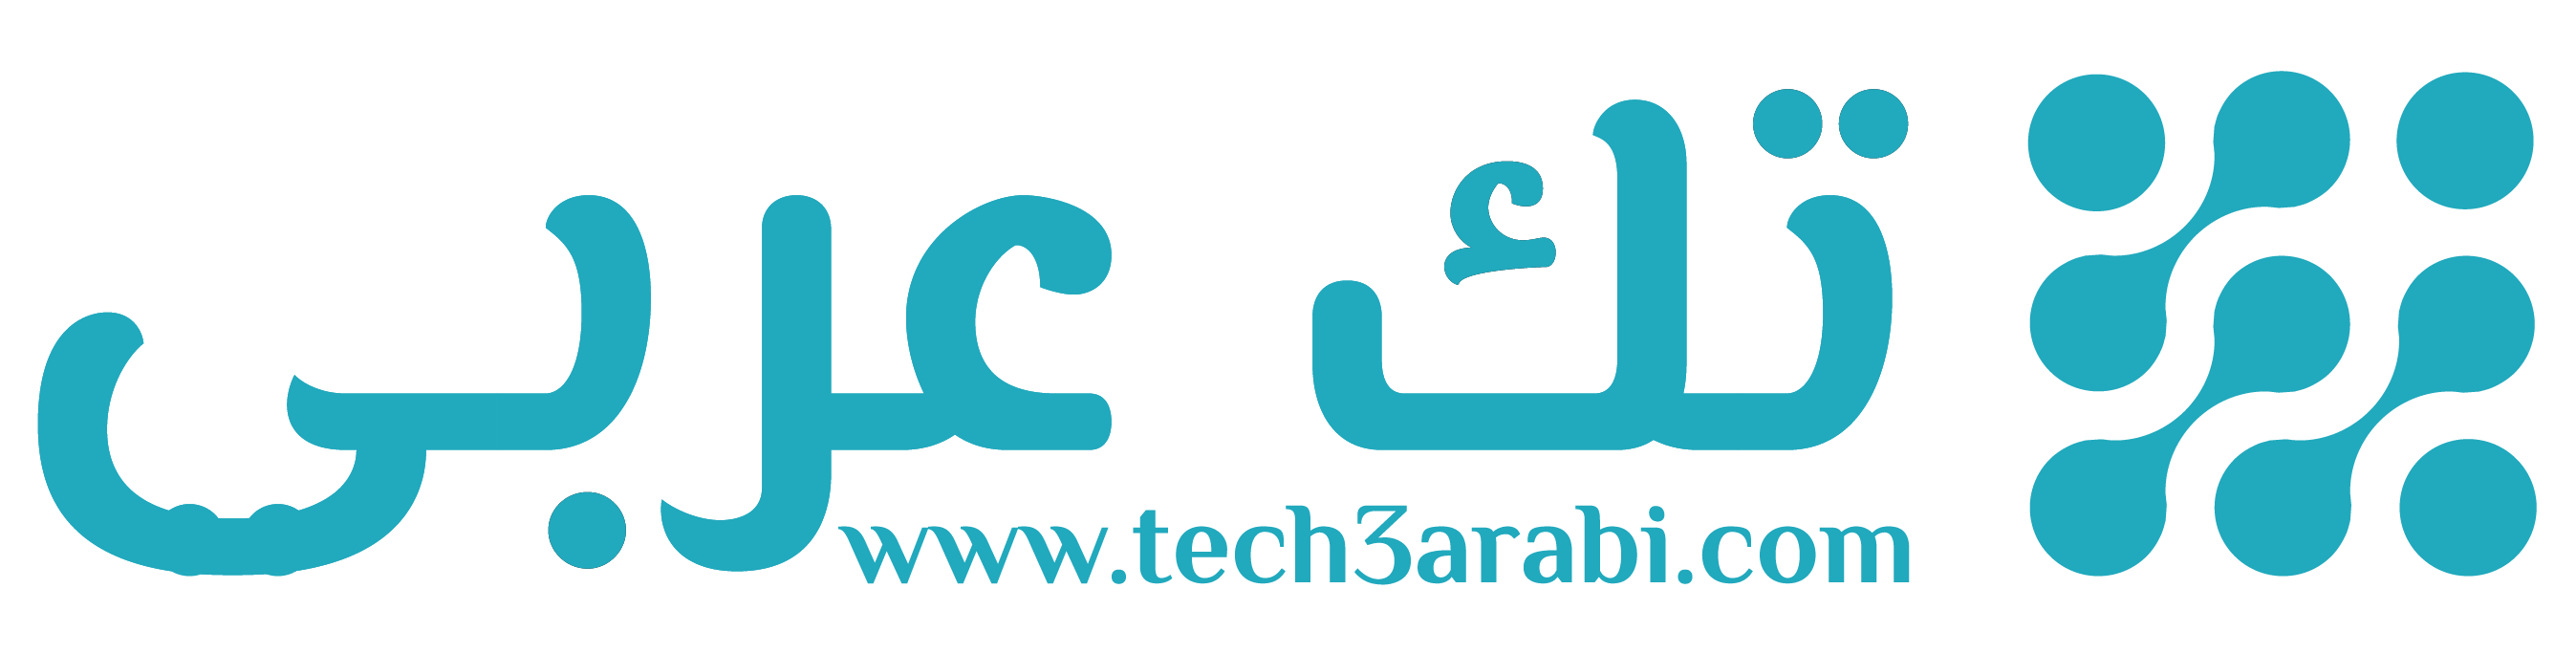 Tech 3arabi